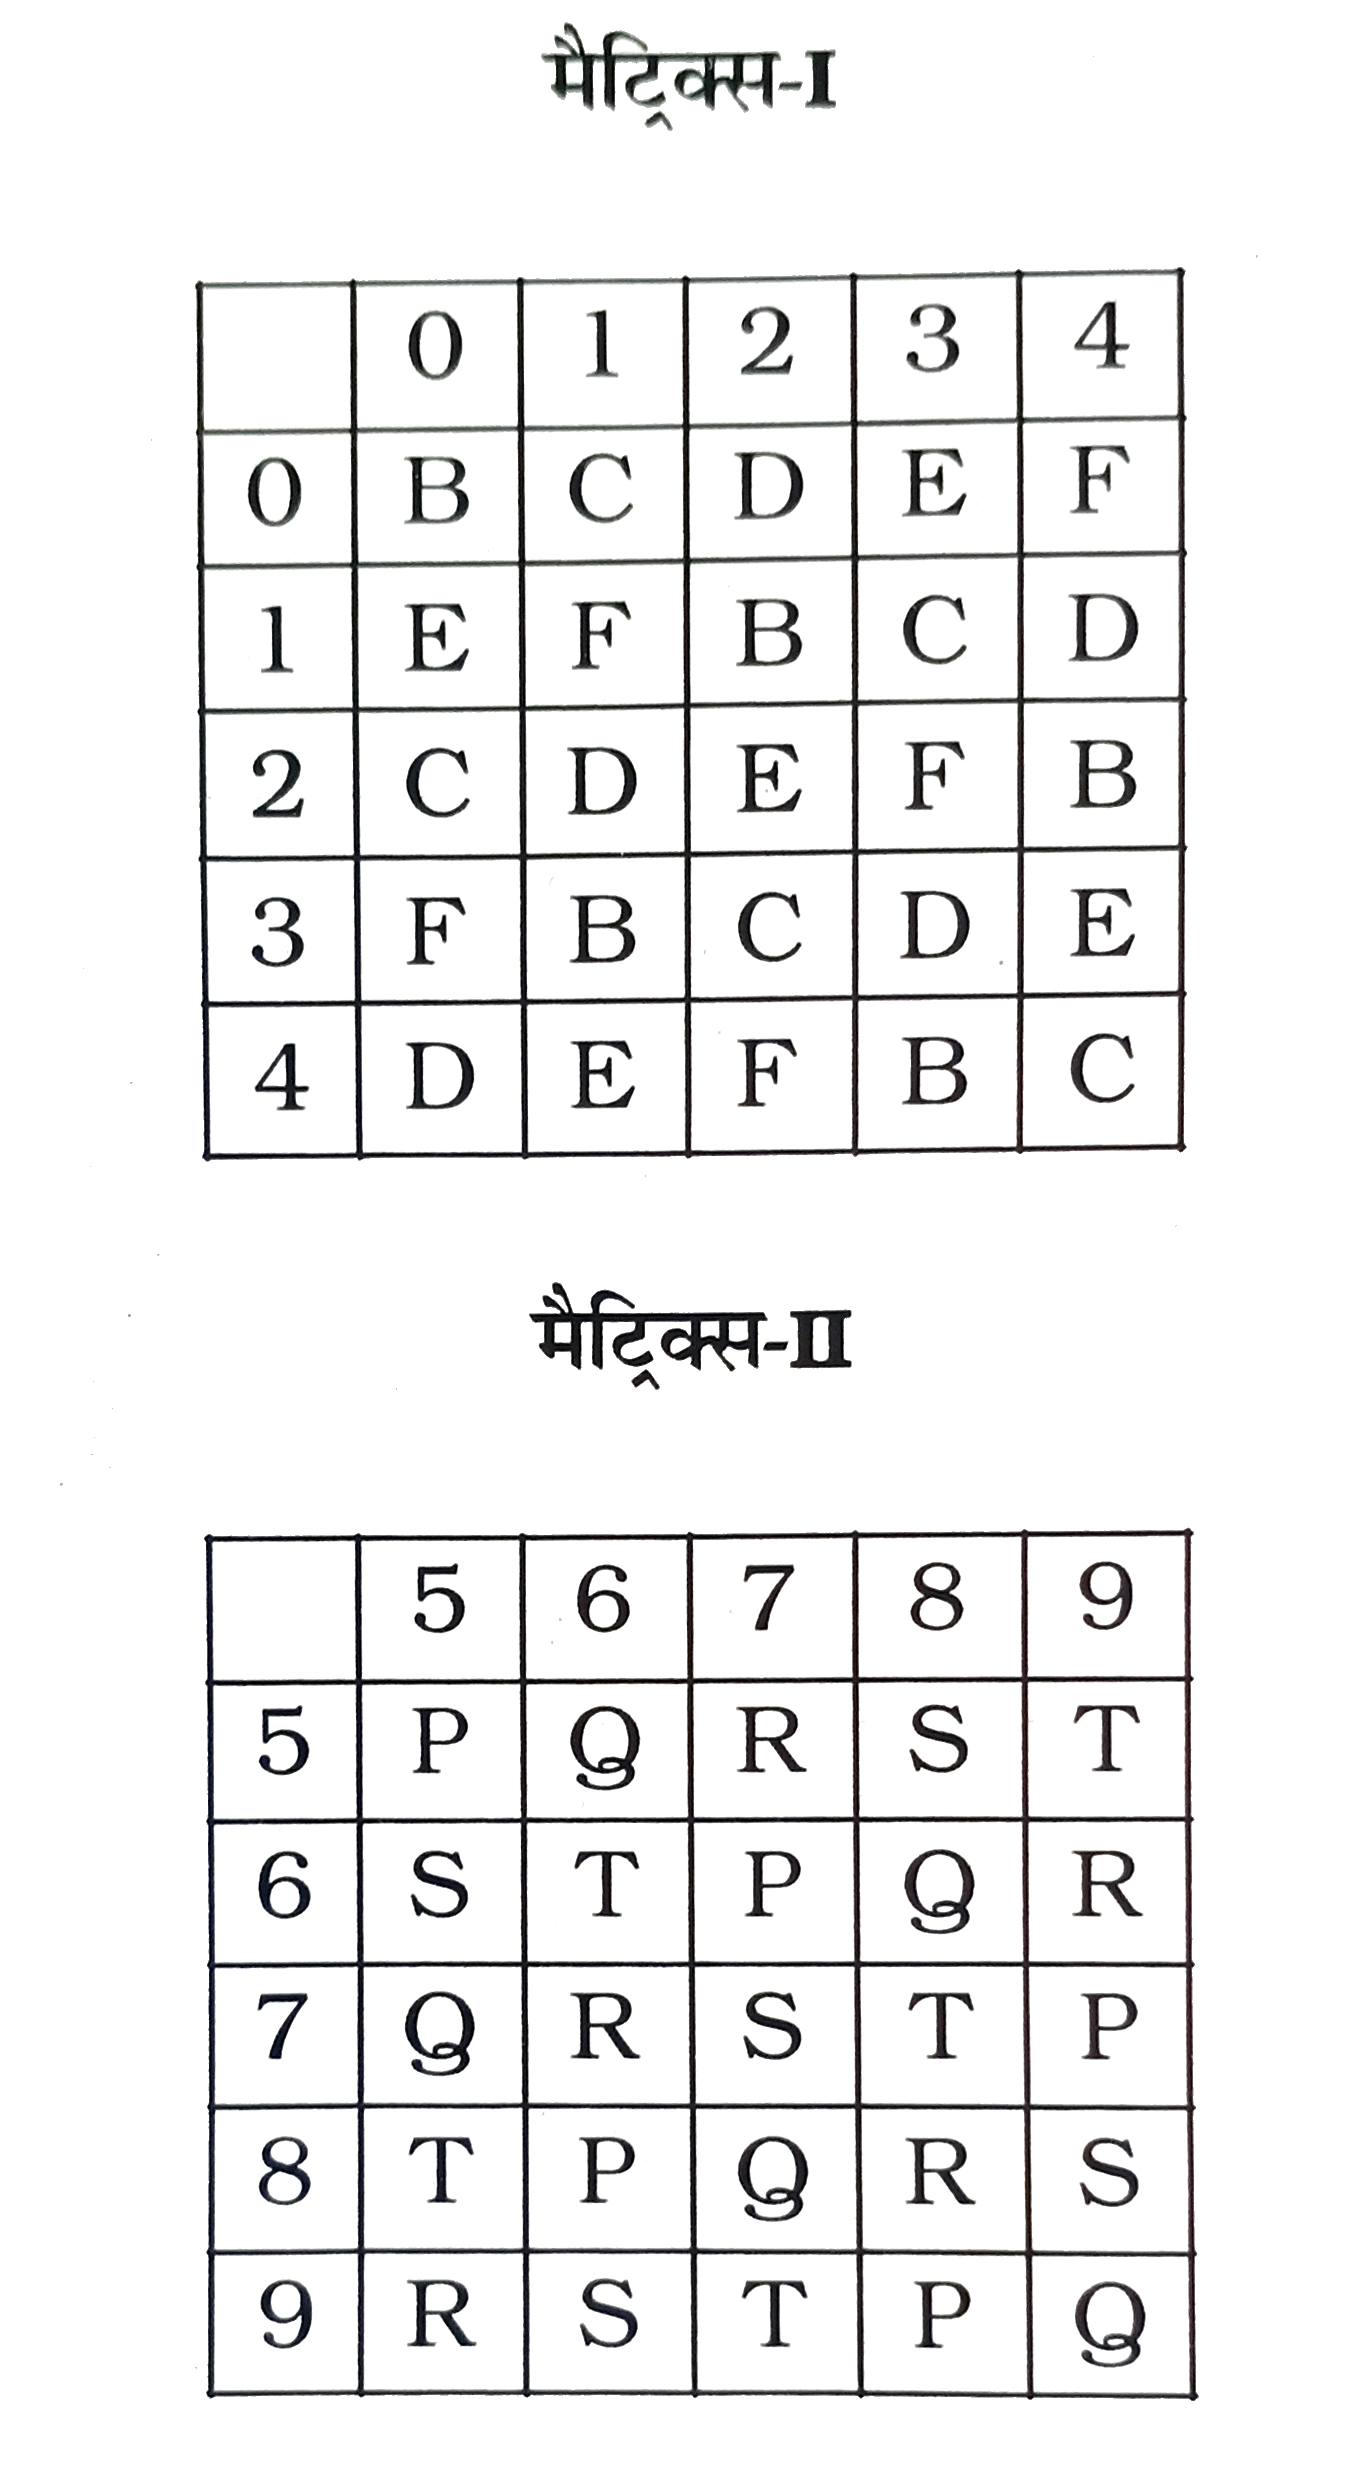 एक शब्द  केवल  एक  संख्या  -समूह  द्वारा  दर्शाया  गया  हैं , जैसा  कि विकल्पों  में दिया  गया  हैं । विकल्पों   में  दिए संख्या  - समूह  , अक्षरों  के  दो वर्गों  द्वारा  दर्शाए गए हैं  , जैसा  कि नीचे  दिए   दो  मैट्रिसेज में  है ।  मैट्रीक्स ।  के  स्तंभों  और  पंक्तियों को  संख्या  0  से  4  तक  दिए  गया है  और  मैट्रिक्स  II  के  स्तंभों  तथा पंक्तियों  को  5 से  9  तक  । इन  मैट्रिसेज़ से  एक  अक्षर  को  पहले  उसकी  पंक्ति और फिर  स्तंभों   संख्या  द्वारा  दर्शाया  जा  सकता  है ।  उदाहरण  के  लिए  'D  को  02 , 14  आदि  द्वारा  दर्शाया  जा सकता  है ।  इसी  तरह  से  आपको  शब्द  BEST  के  लिए  संख्या - समूह  को  पहचानना  है ।